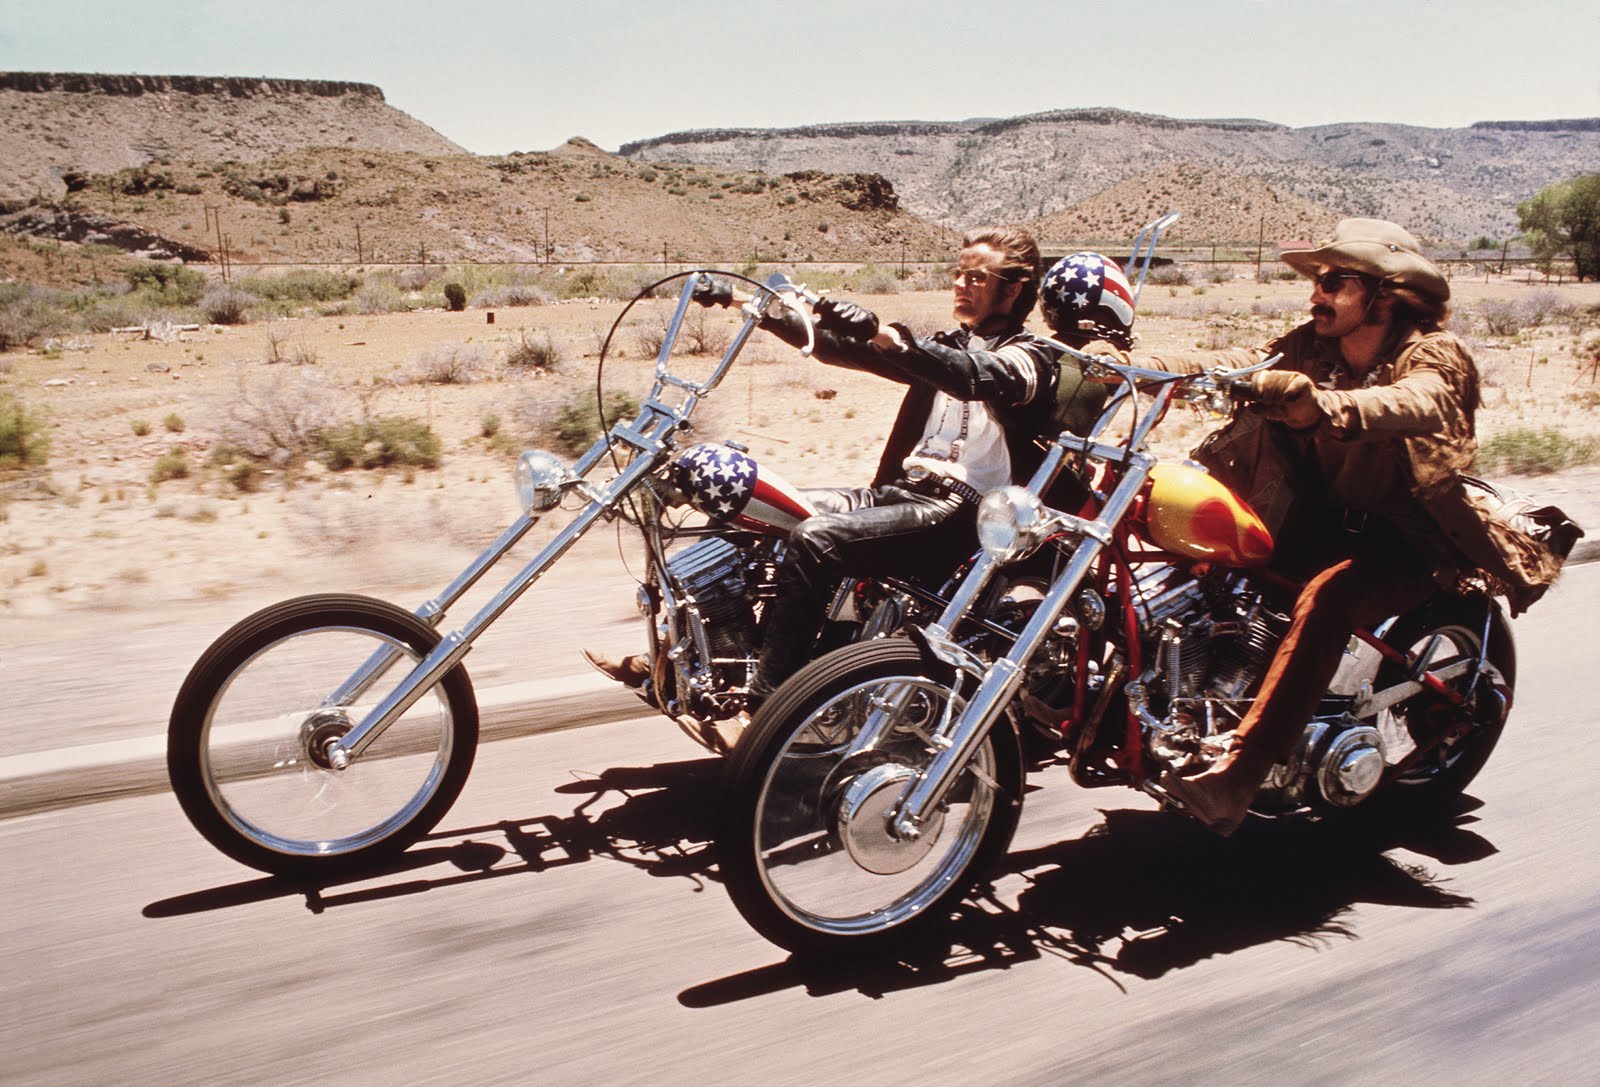 Easy Rider: analisi e significato del film di Dennis Hopper